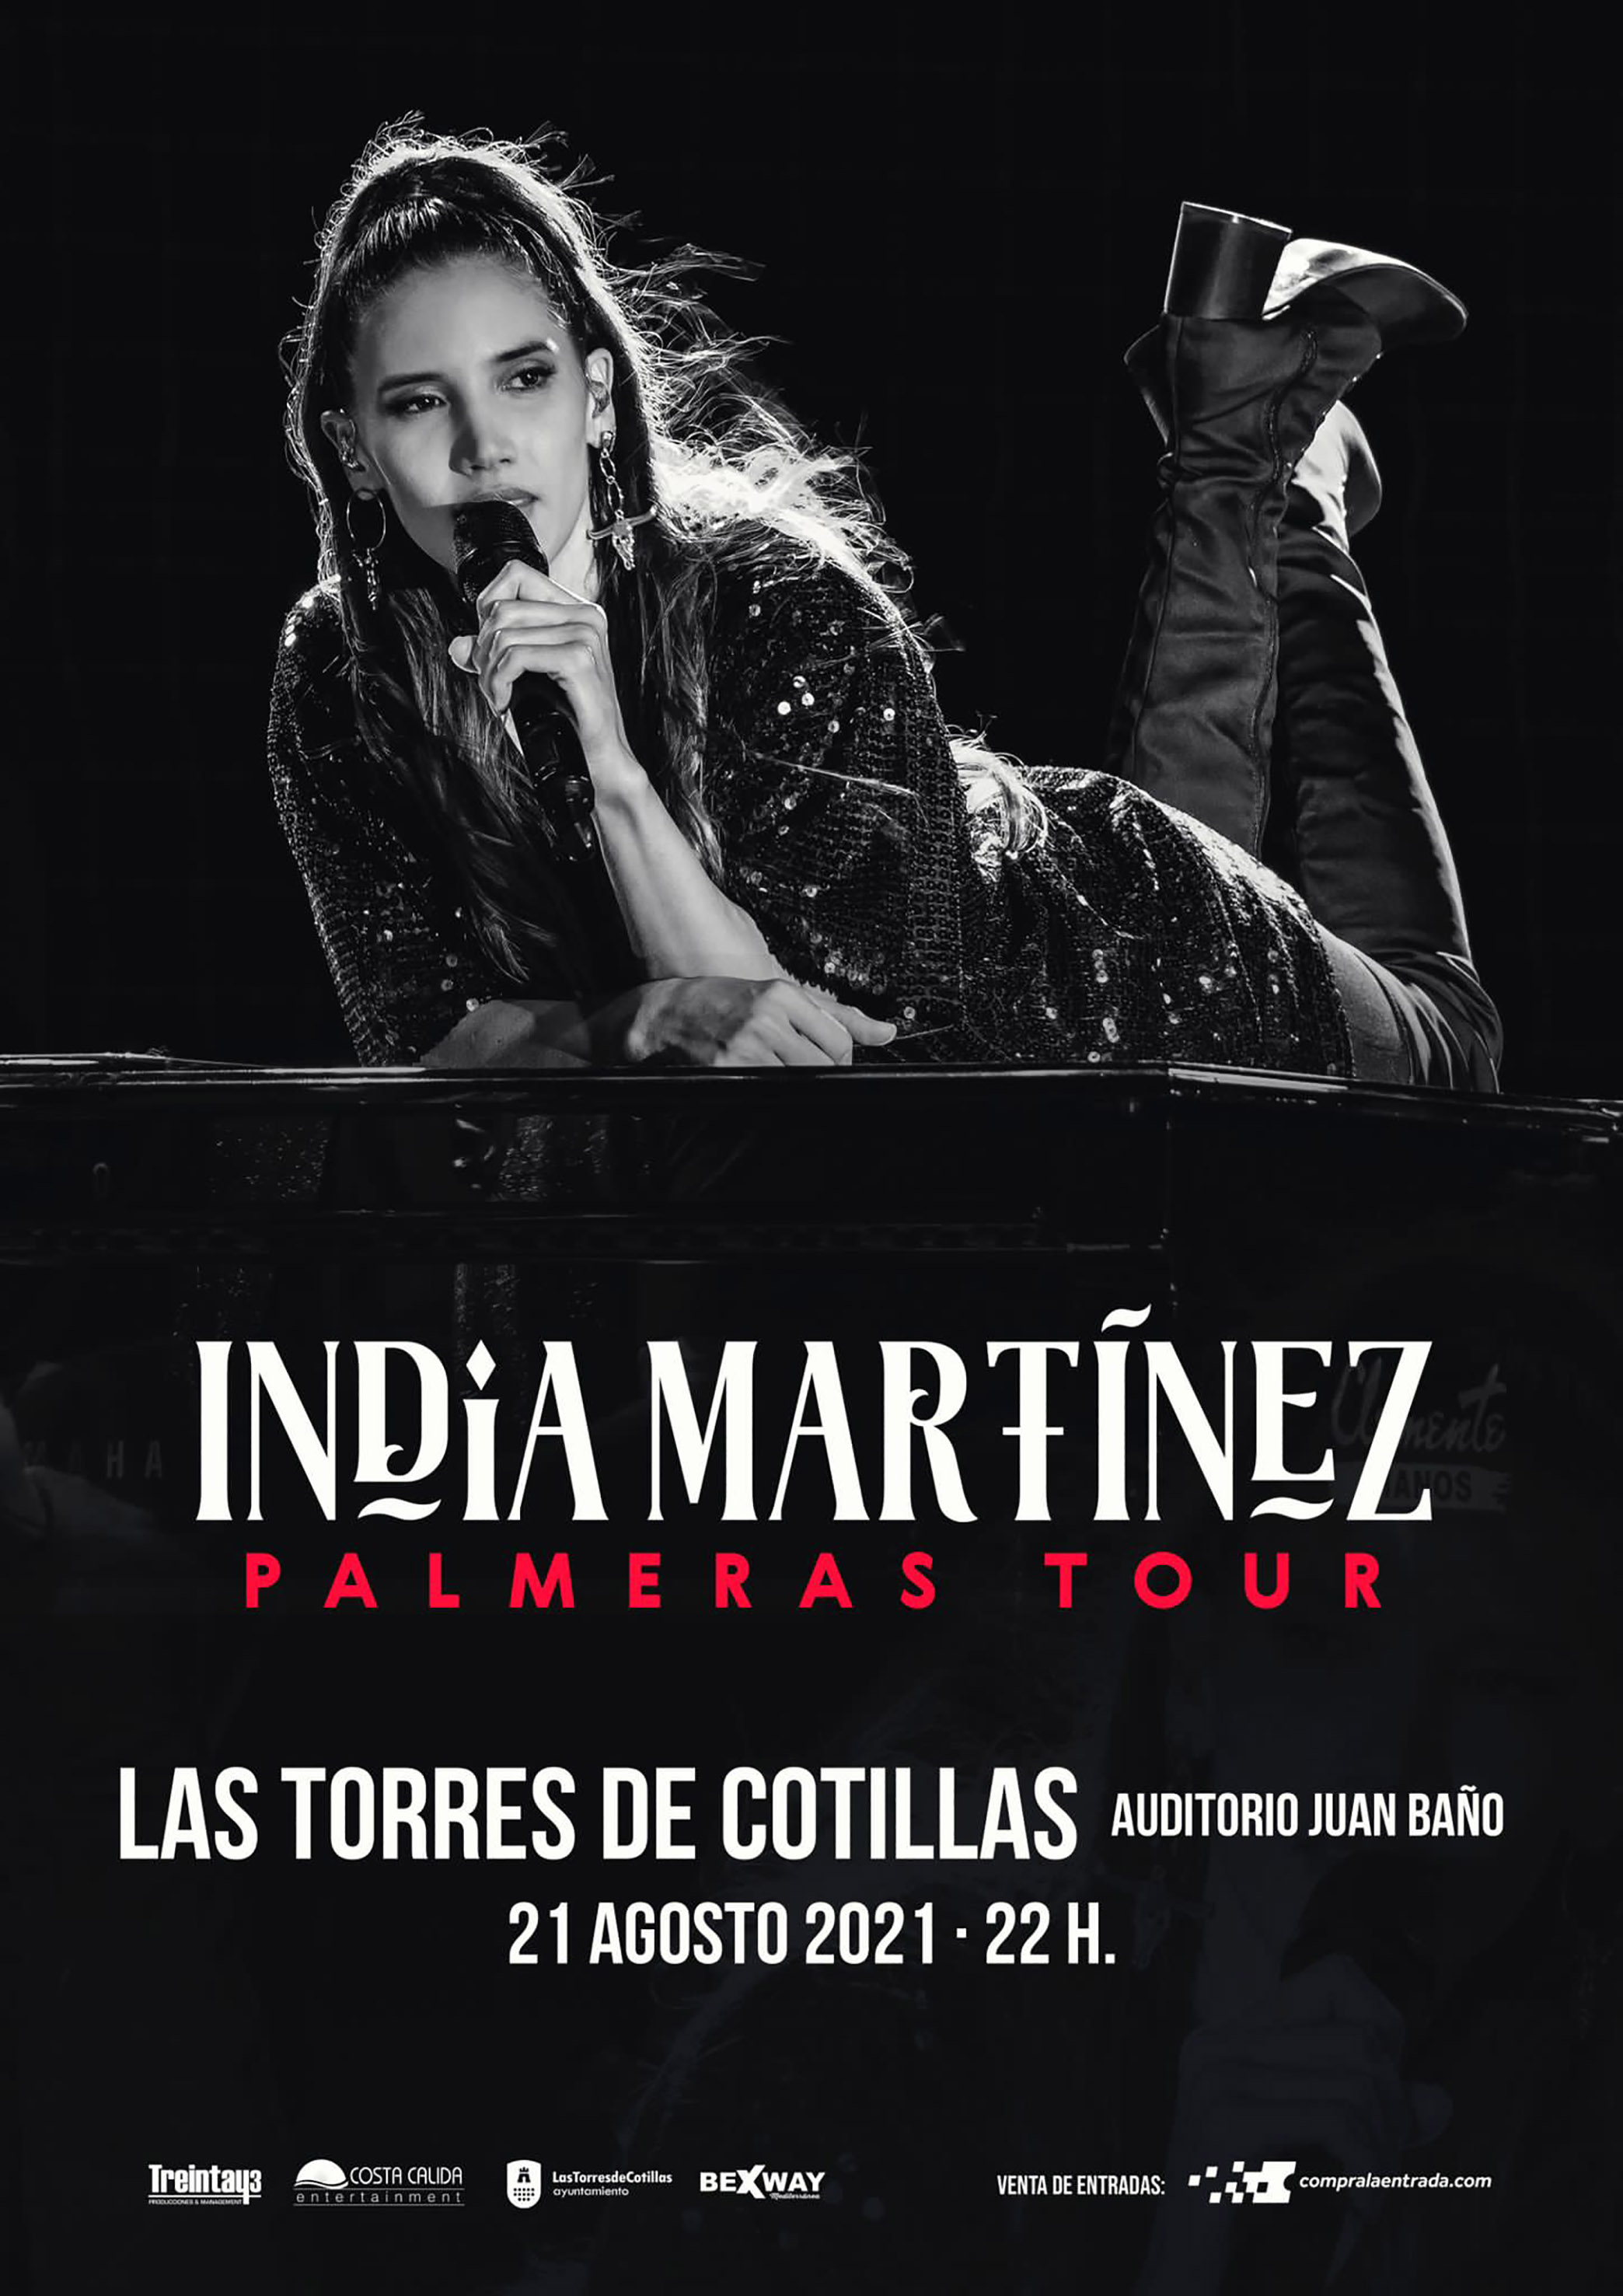 India Martínez concierto Las Torres de Cotillas